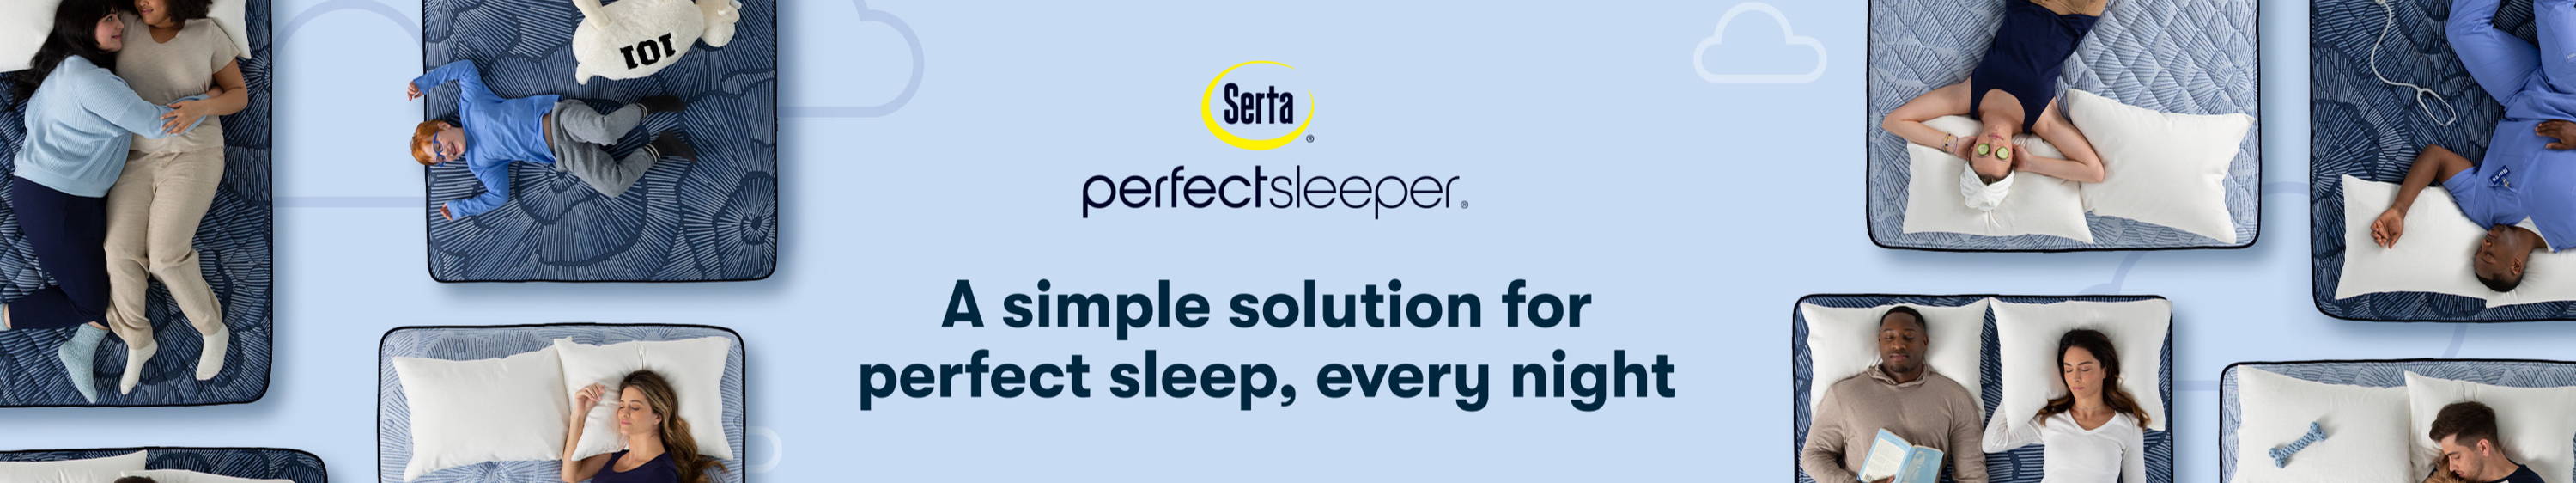 Serta Perfect Sleeper Mattress